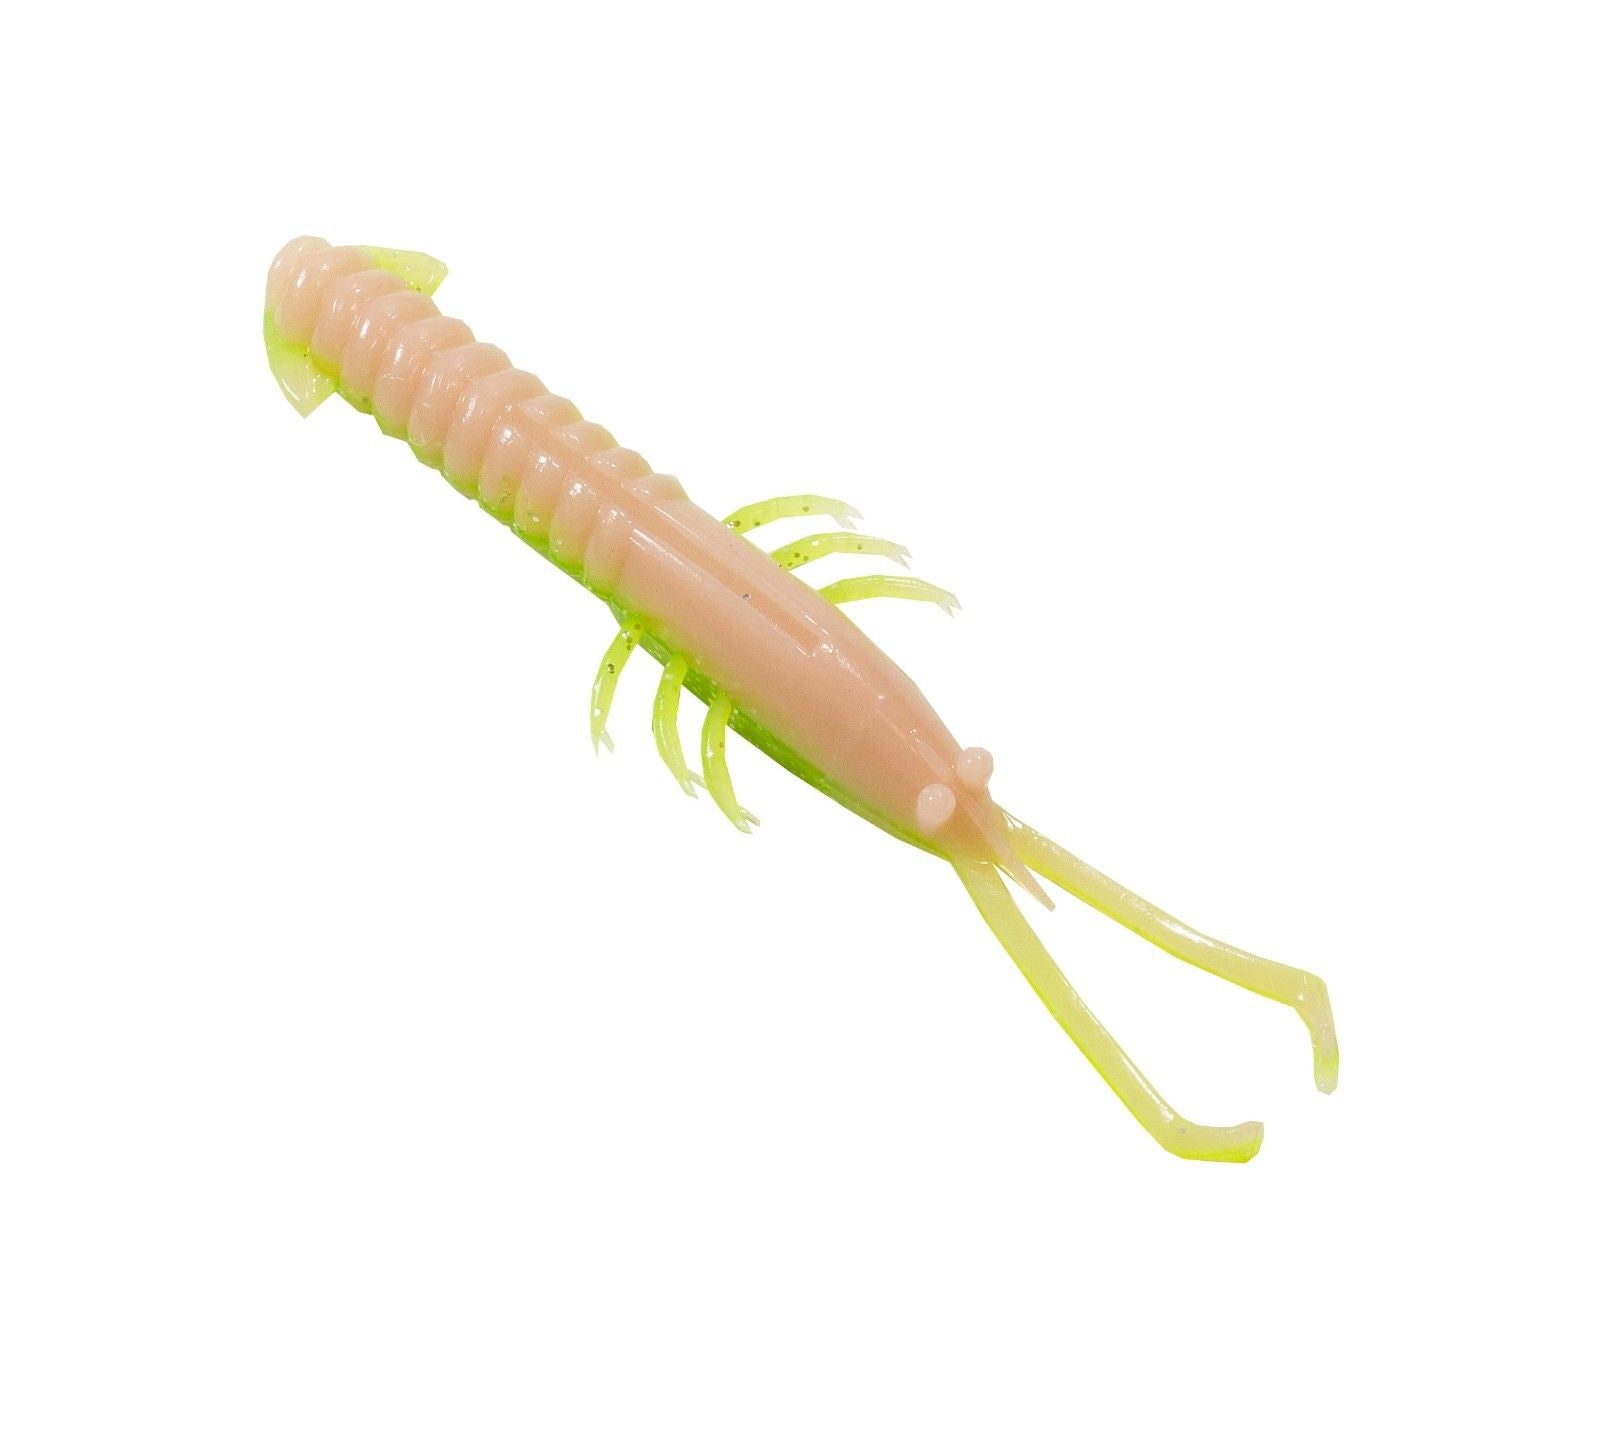 Z Man Trout Trick Jerk ShrimpZ 4 inch Soft Plastic Shrimp 5 pack